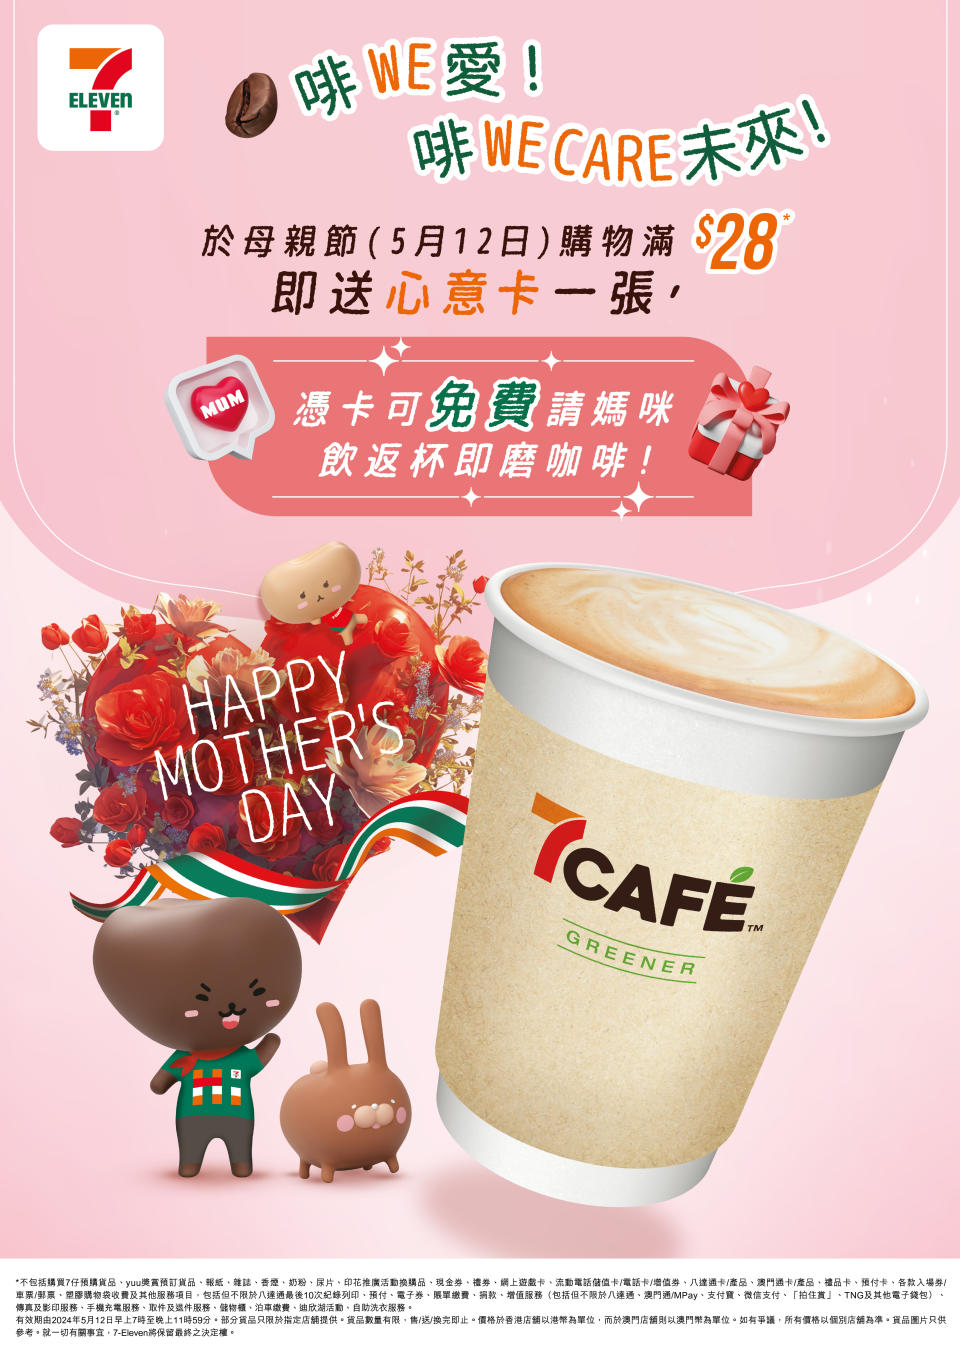 【7-11】母親節限定 送80,000杯7CAFÉ咖啡（只限12/05）